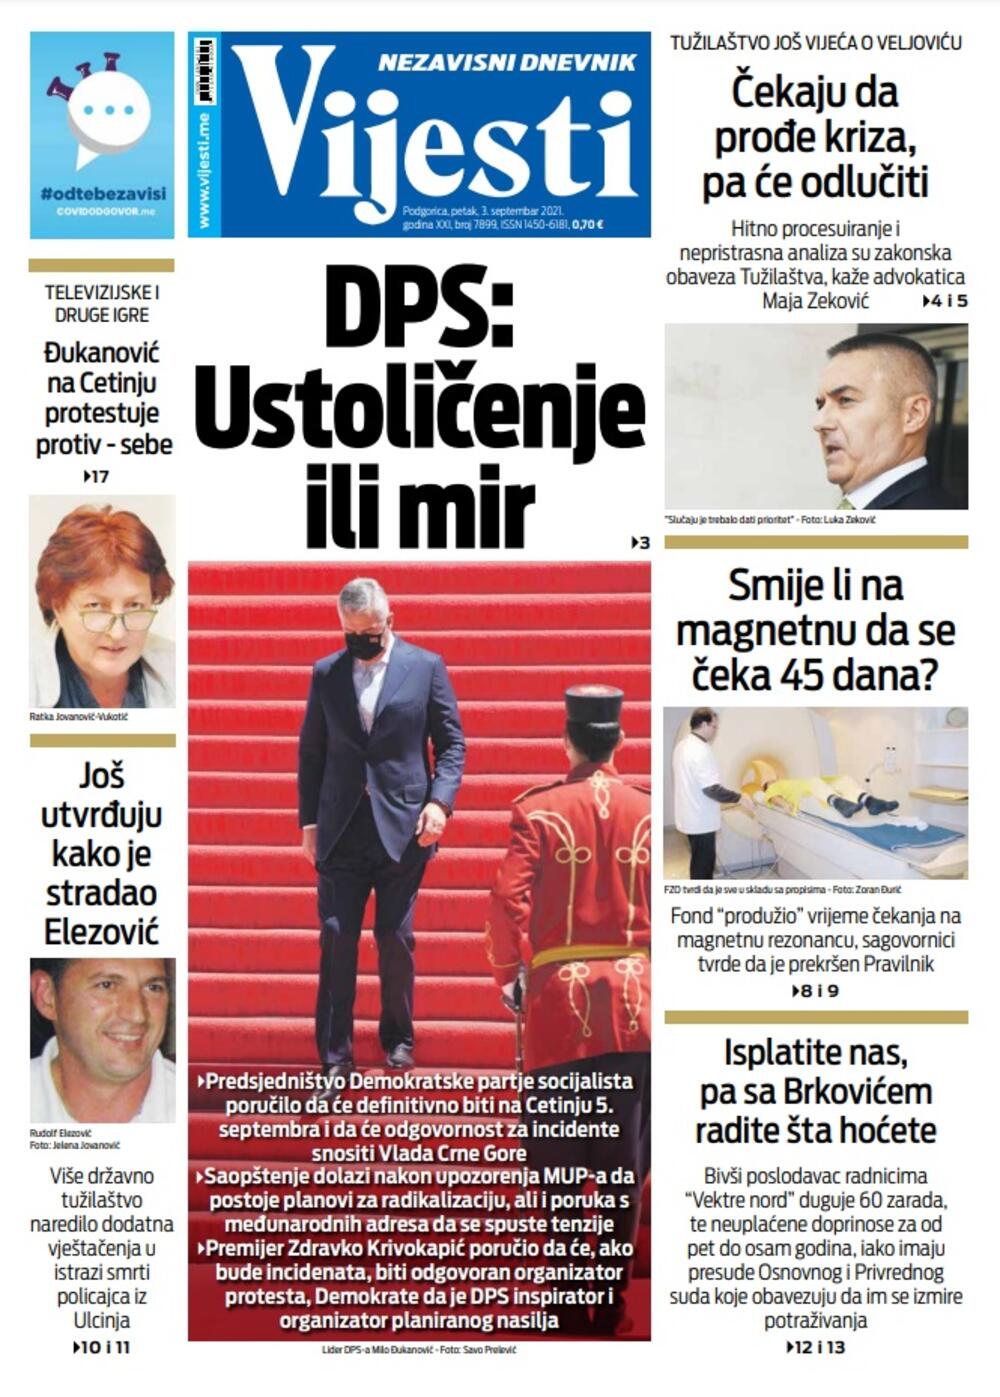 Naslovna strana "Vijesti" za 3. septembar 2021., Foto: Vijesti